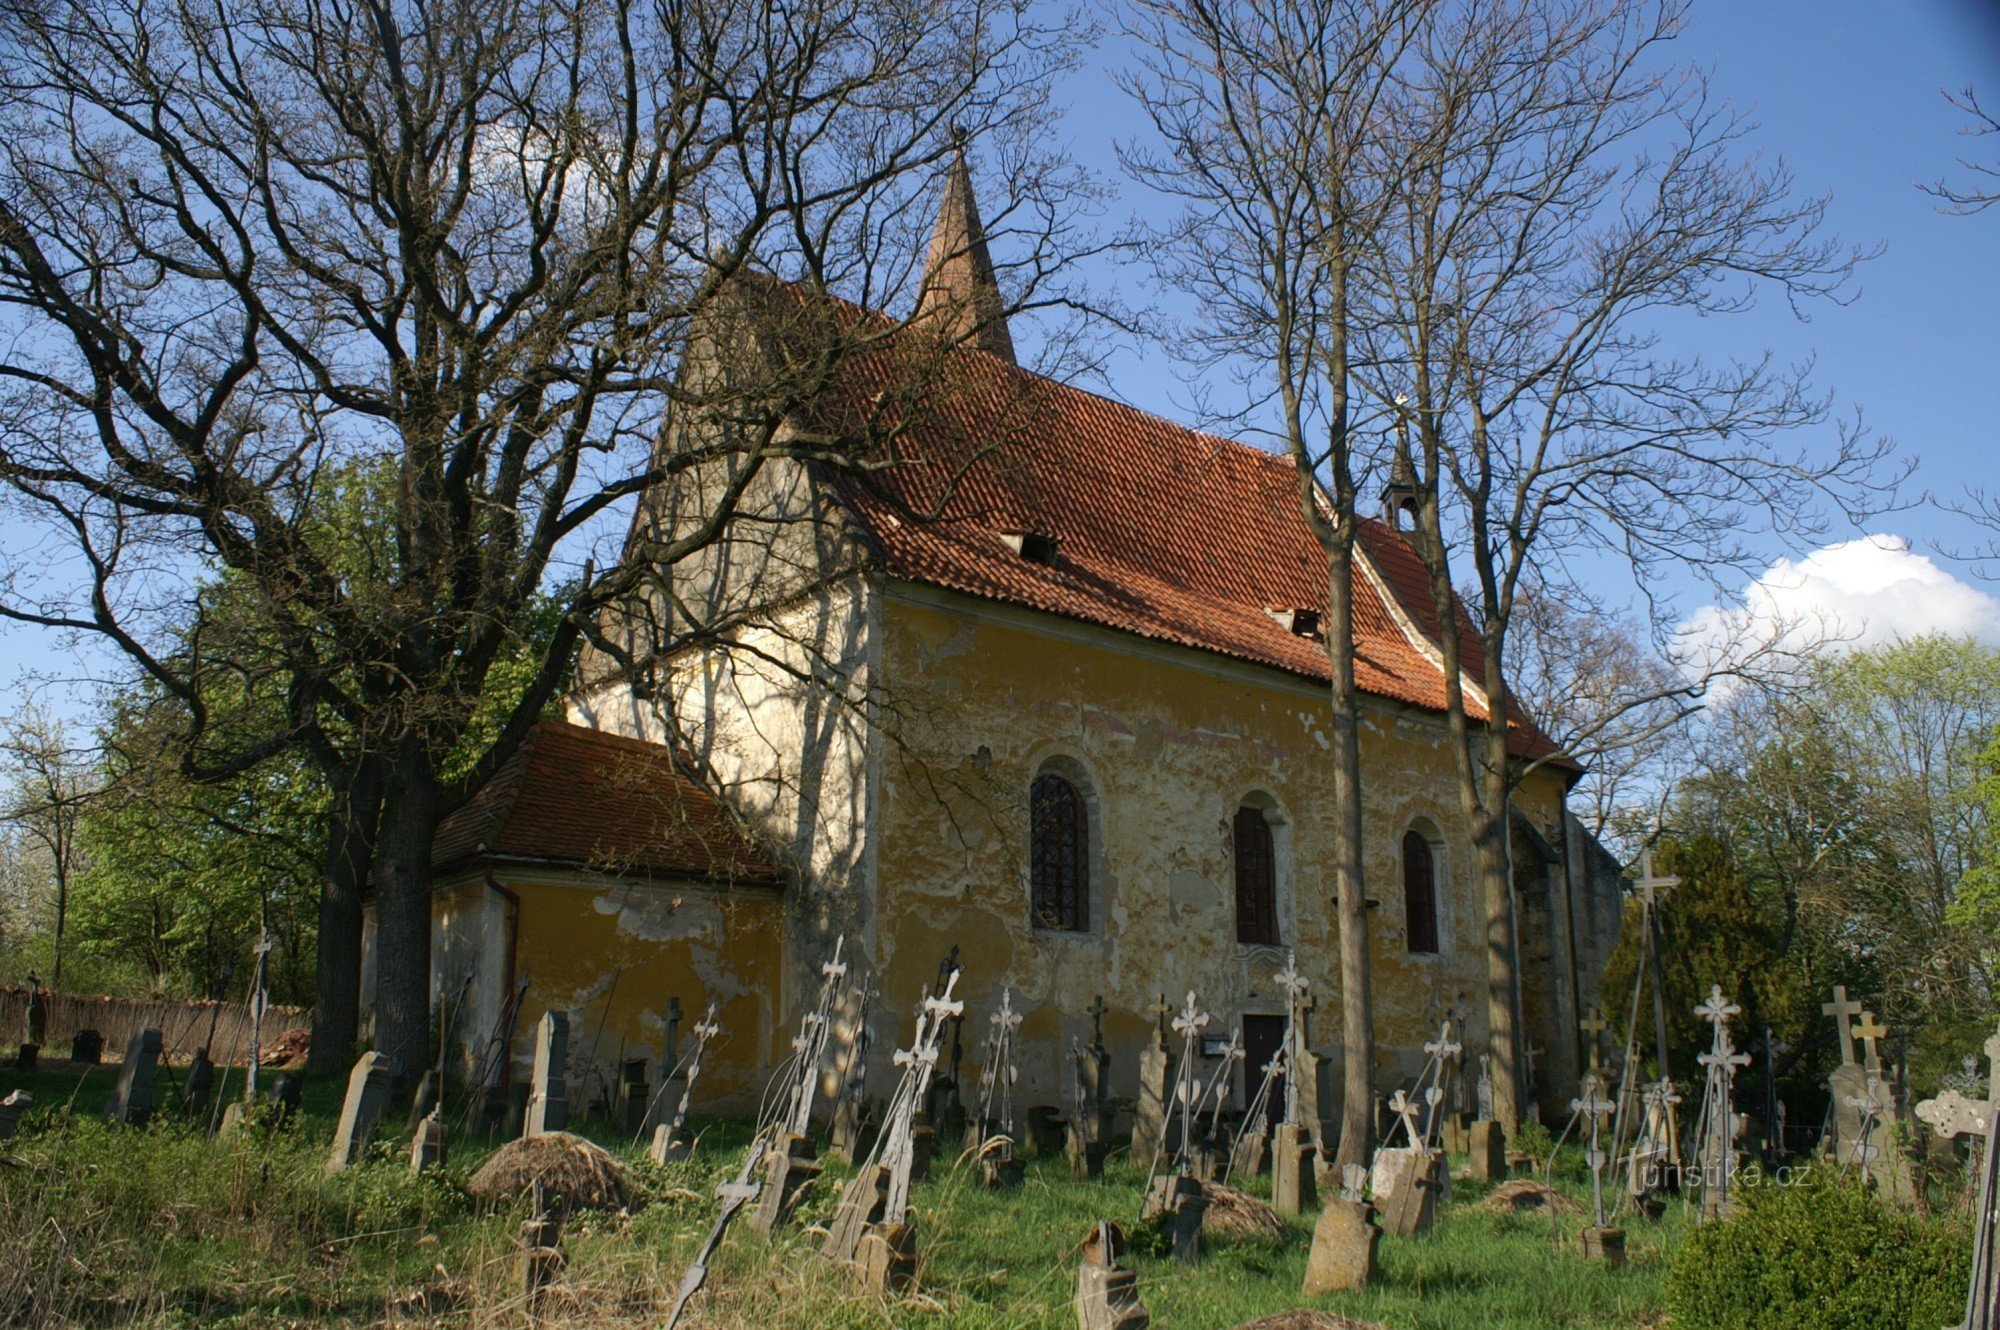 St. Vavřinec nära Tasnovic